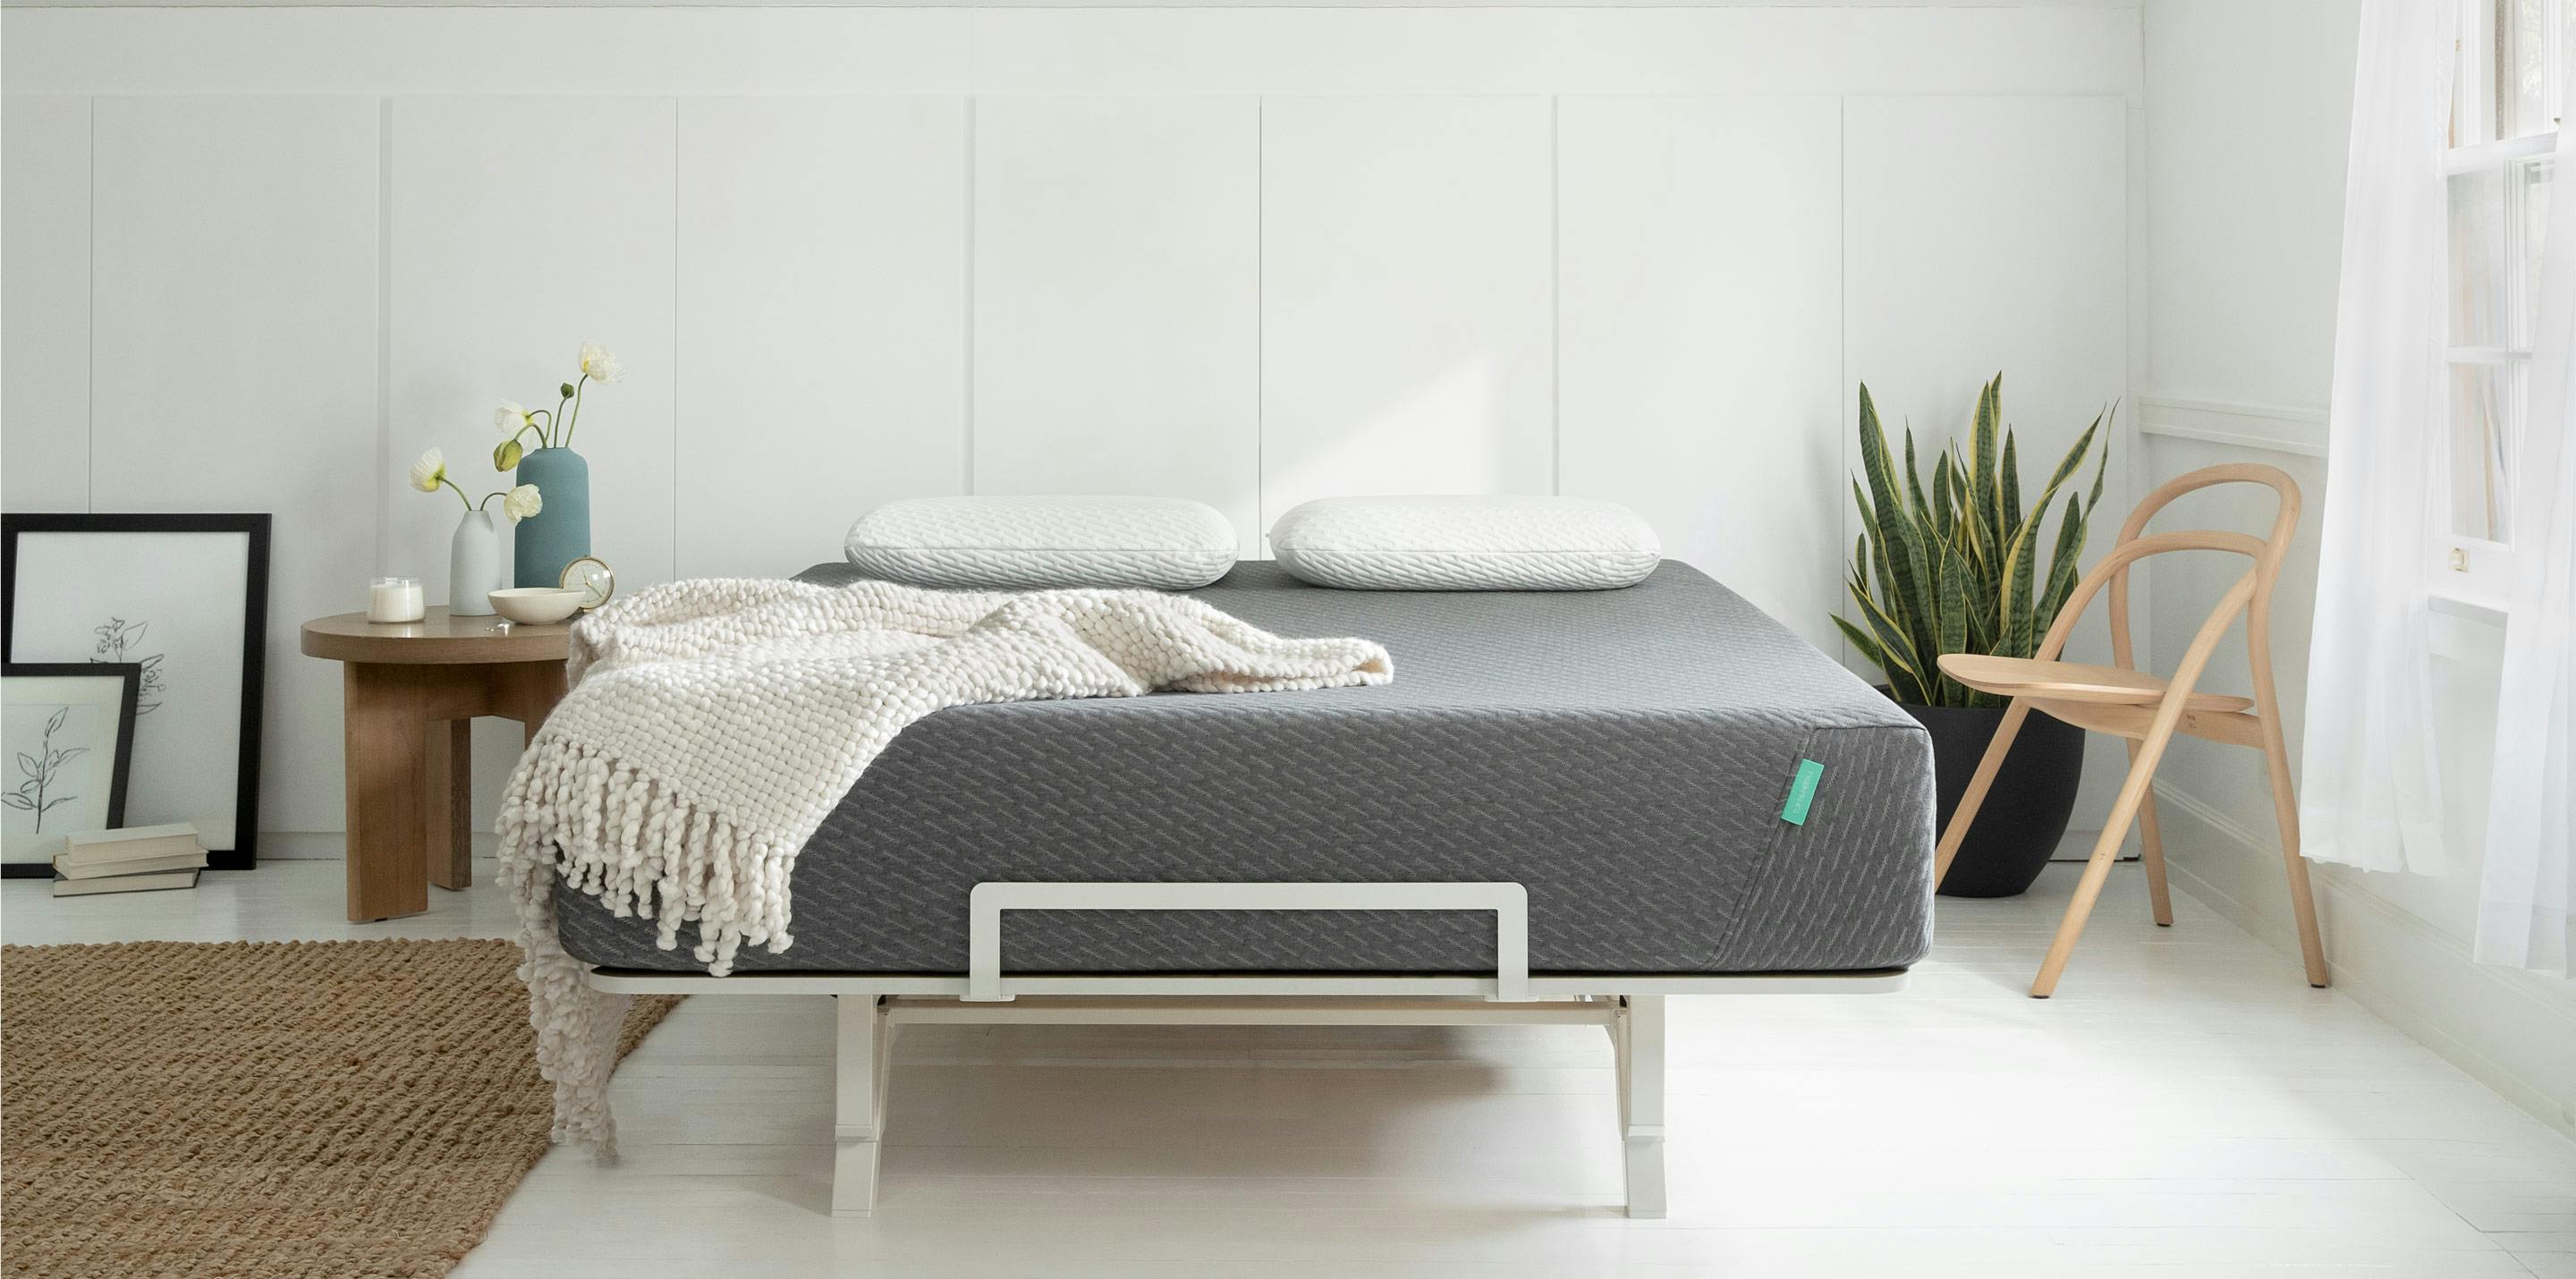 Adjustable Bed Frame Beds, Adjustable Bed Inside Bed Frame